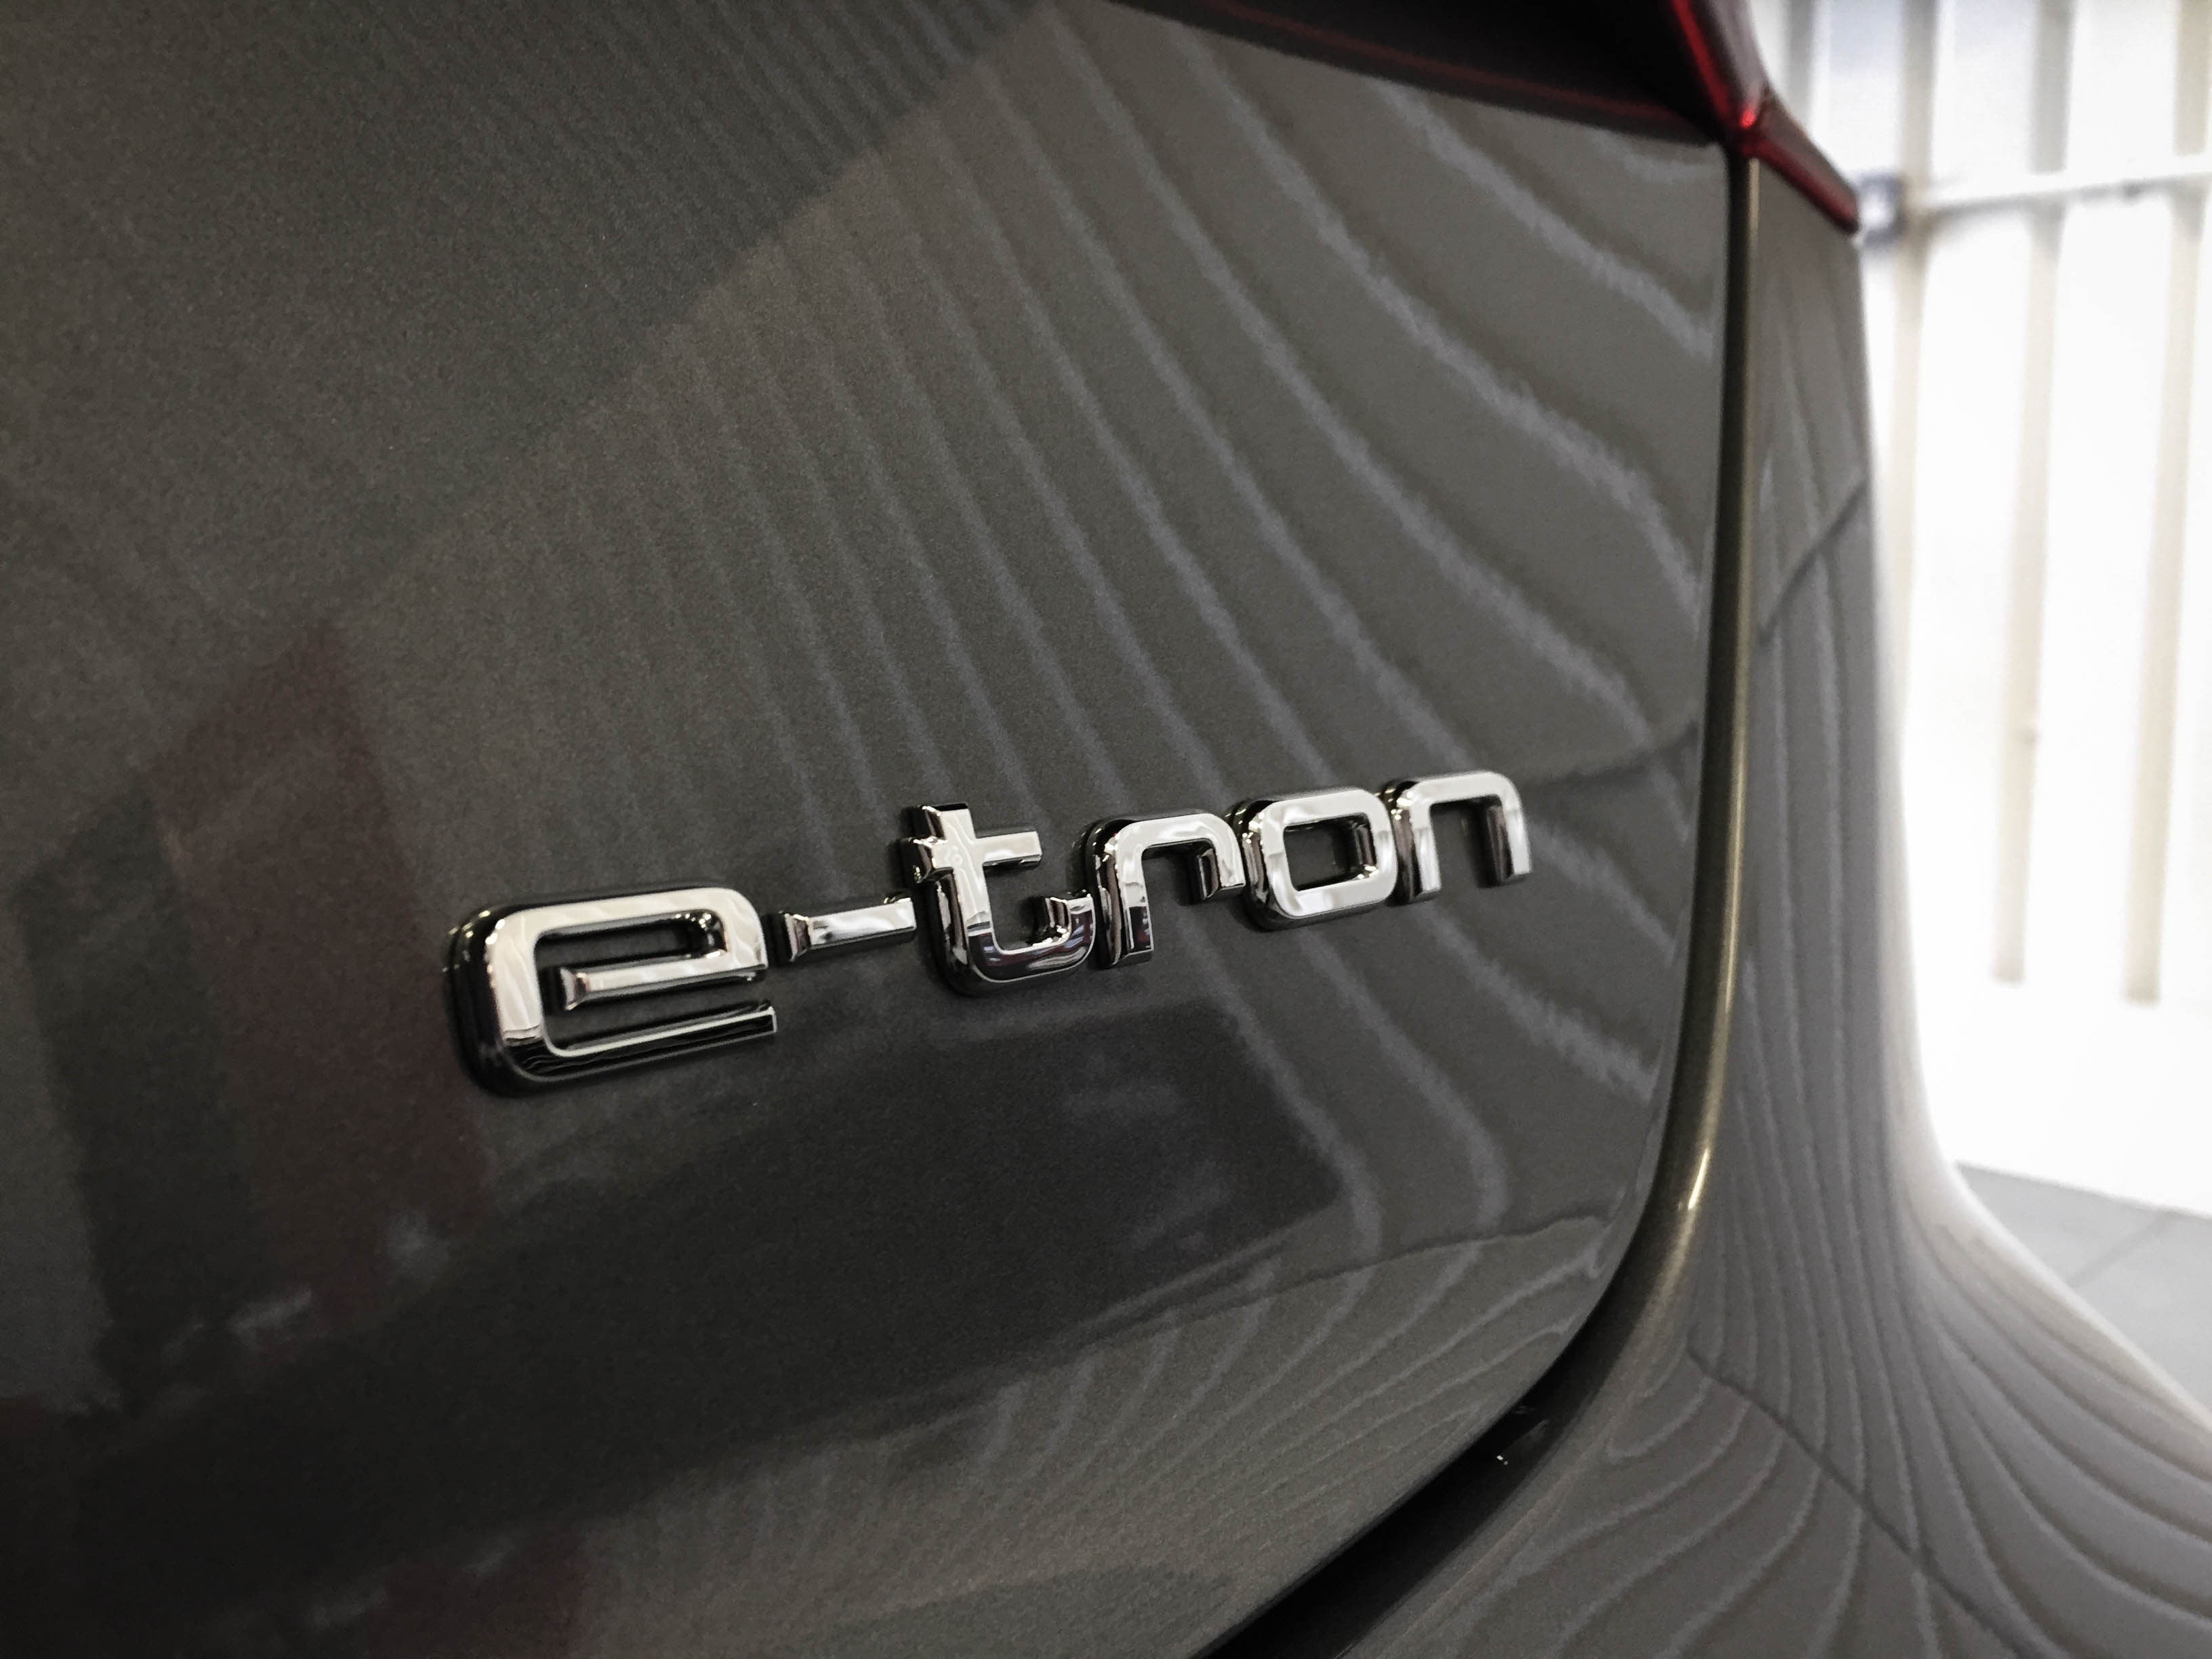 Audi A3 e-tron – rear detail